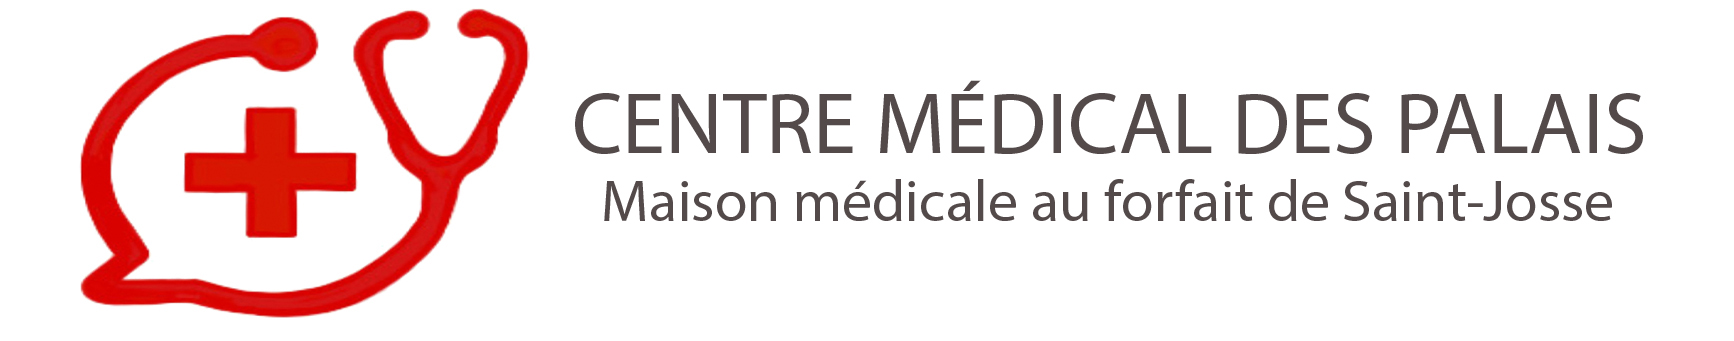 CENTRE MEDICAL DES PALAIS Logo 2023 - Maison Medicale de Saint-Josse